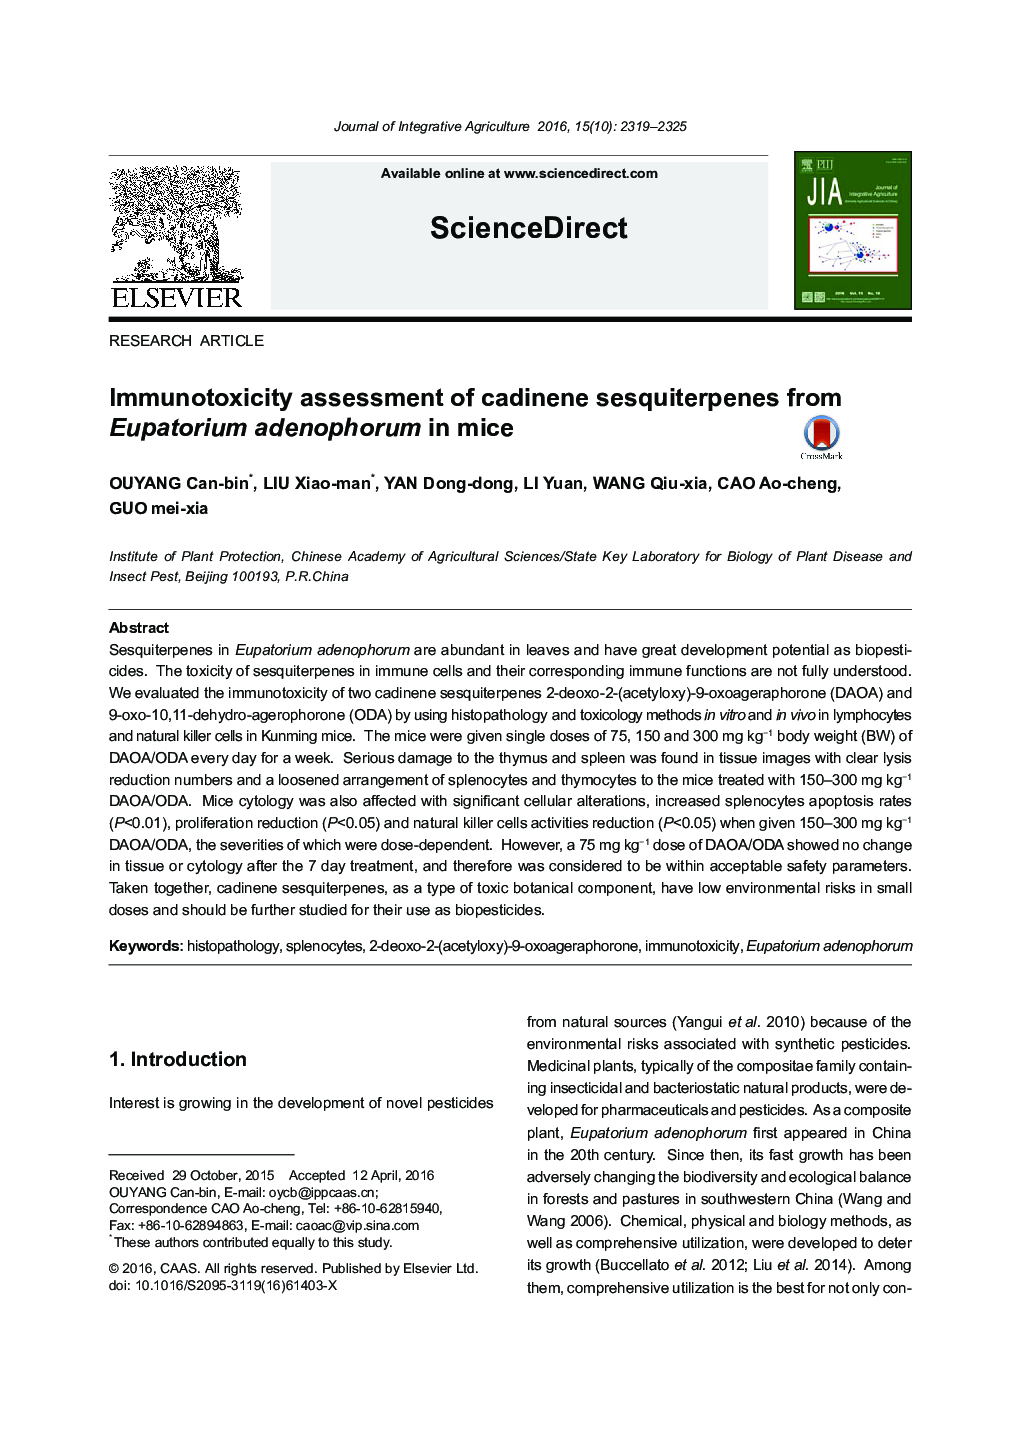 Immunotoxicity assessment of cadinene sesquiterpenes from Eupatorium adenophorum in mice